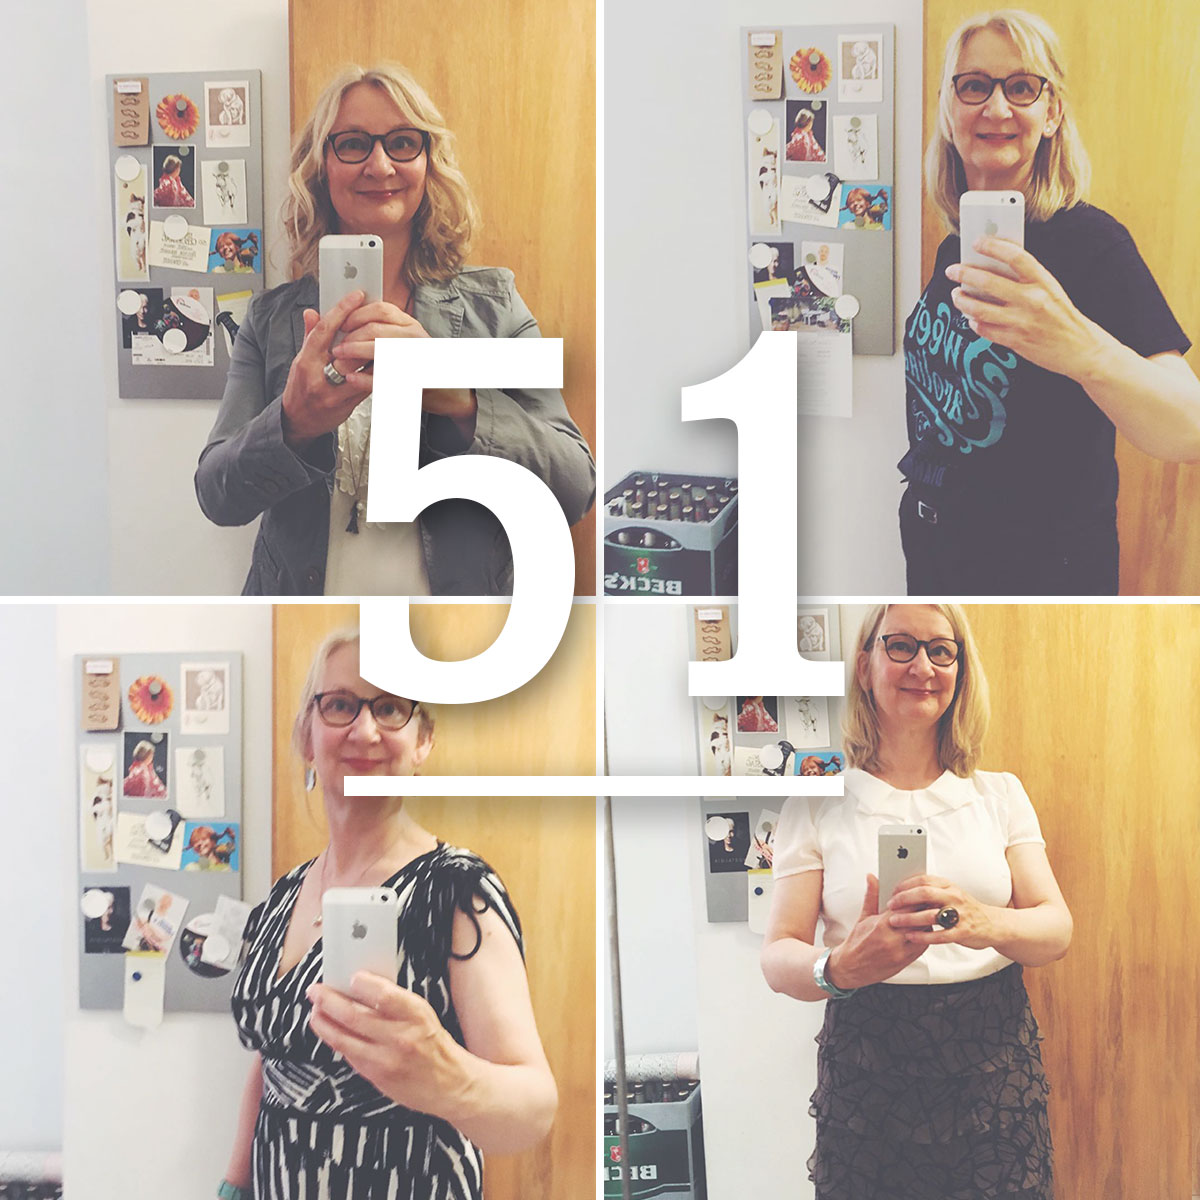 Verschiedene Selfies von Dr. Anke Hedfeld zu einer Collage zusammengefügt. Darüber steht die Zahl 51 mit einem Strick darunter